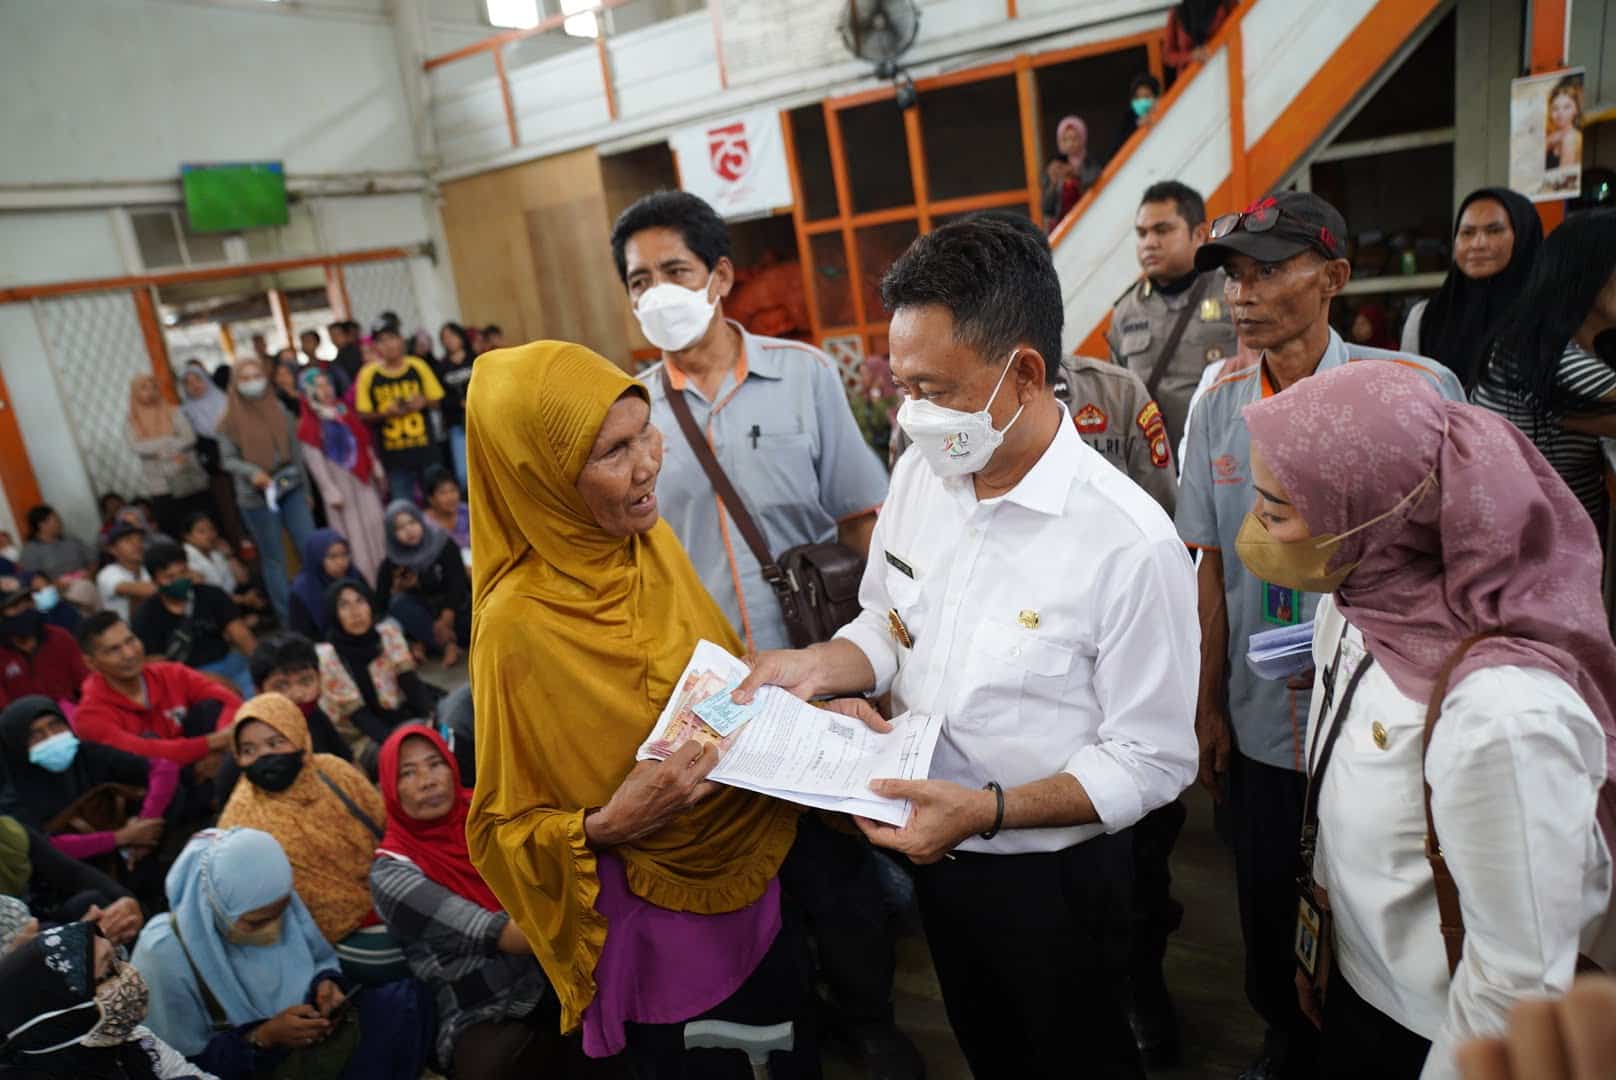 Wali Kota Pontianak, Edi Rusdi Kamtono menyerahkan bantuan dari Kementerian Sosial secara simbolis kepada seorang warga penerima manfaat. (Foto: Prokopim For KalbarOnline.com)